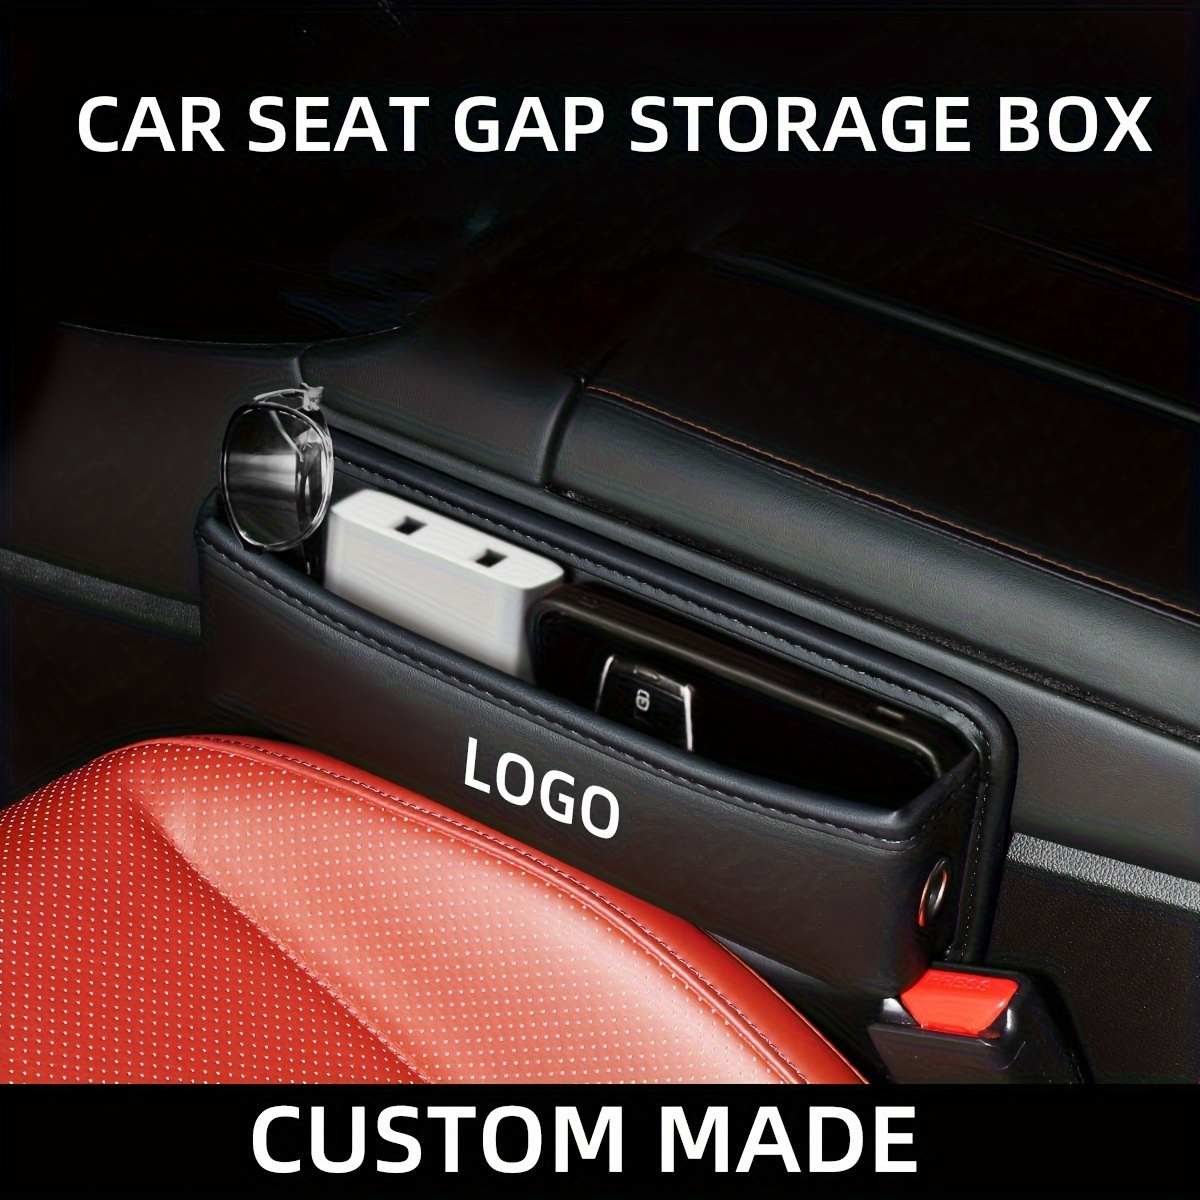  Boîte de rangement pour siège de voiture - En cuir synthétique  de qualité supérieure - Pour téléphones et clés - Pour les séries 3, 5, X1,  X3, X5